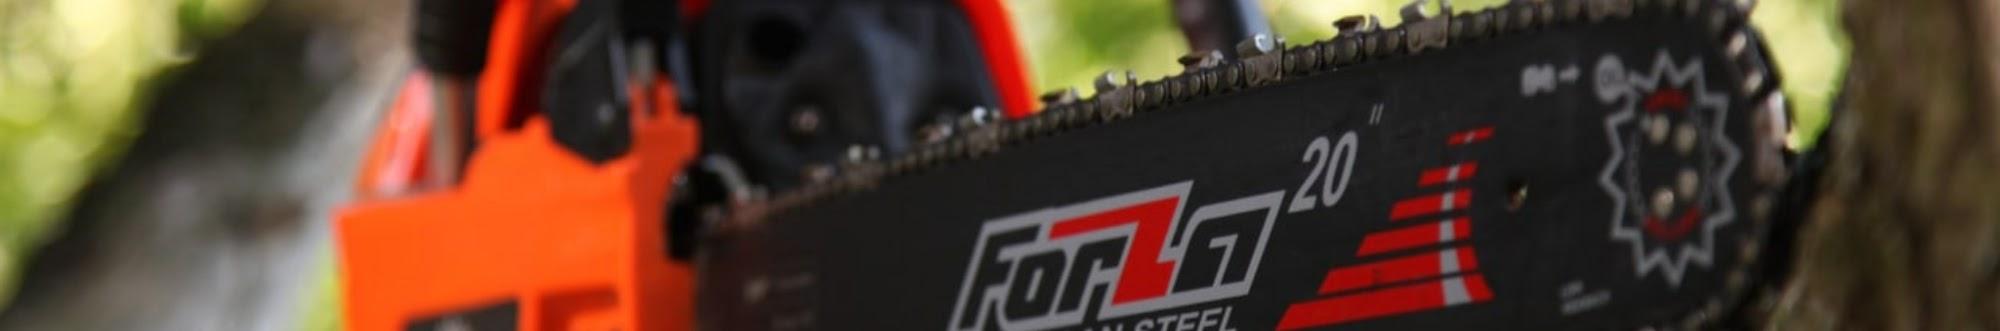 Торговая марка Forza - садовая техника/инструмент/оборудование